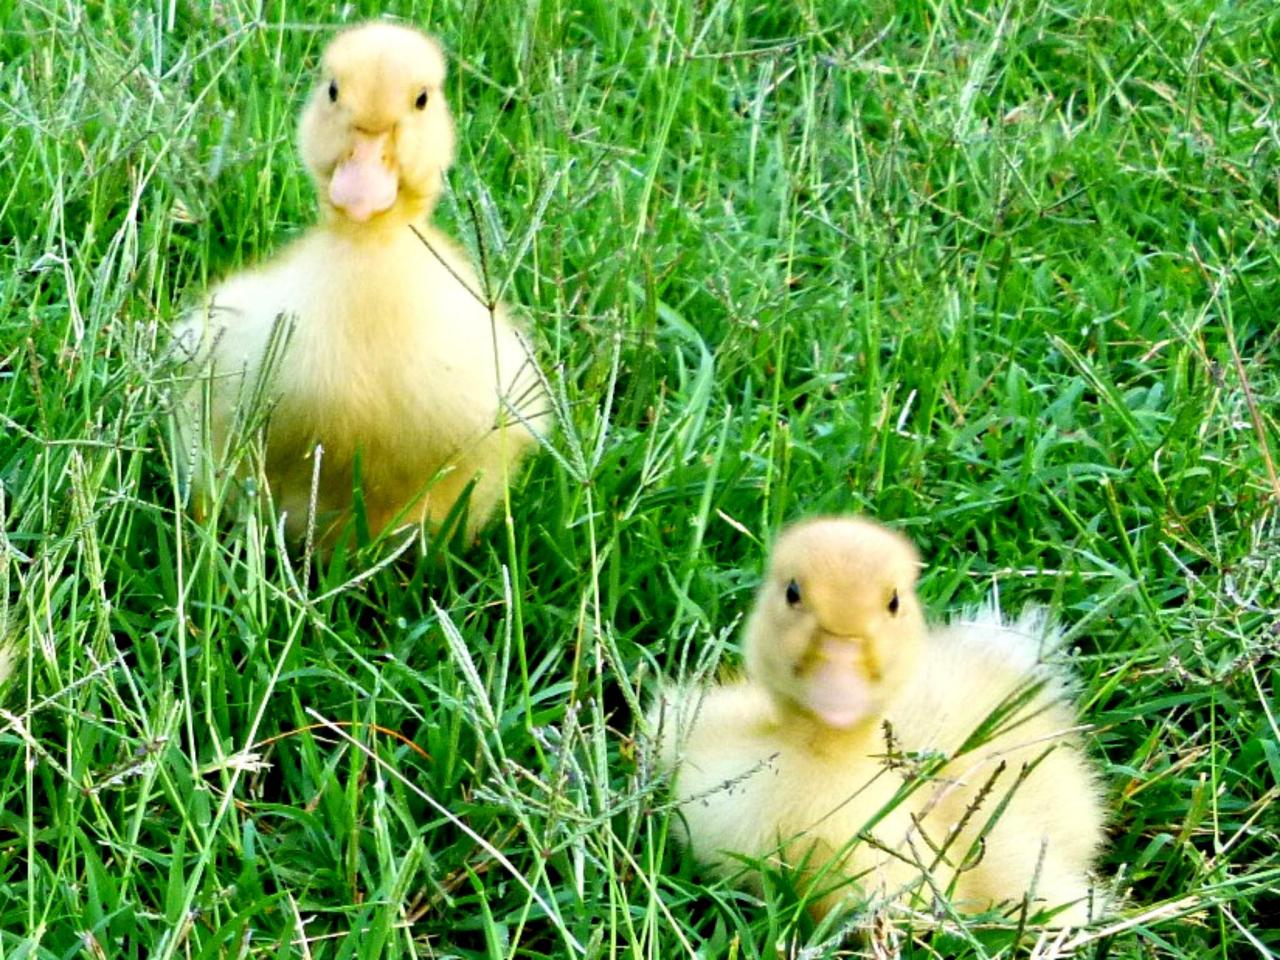 Raising Ducks How To Care For Baby Ducklings Hgtv,Turkey Legs Meme